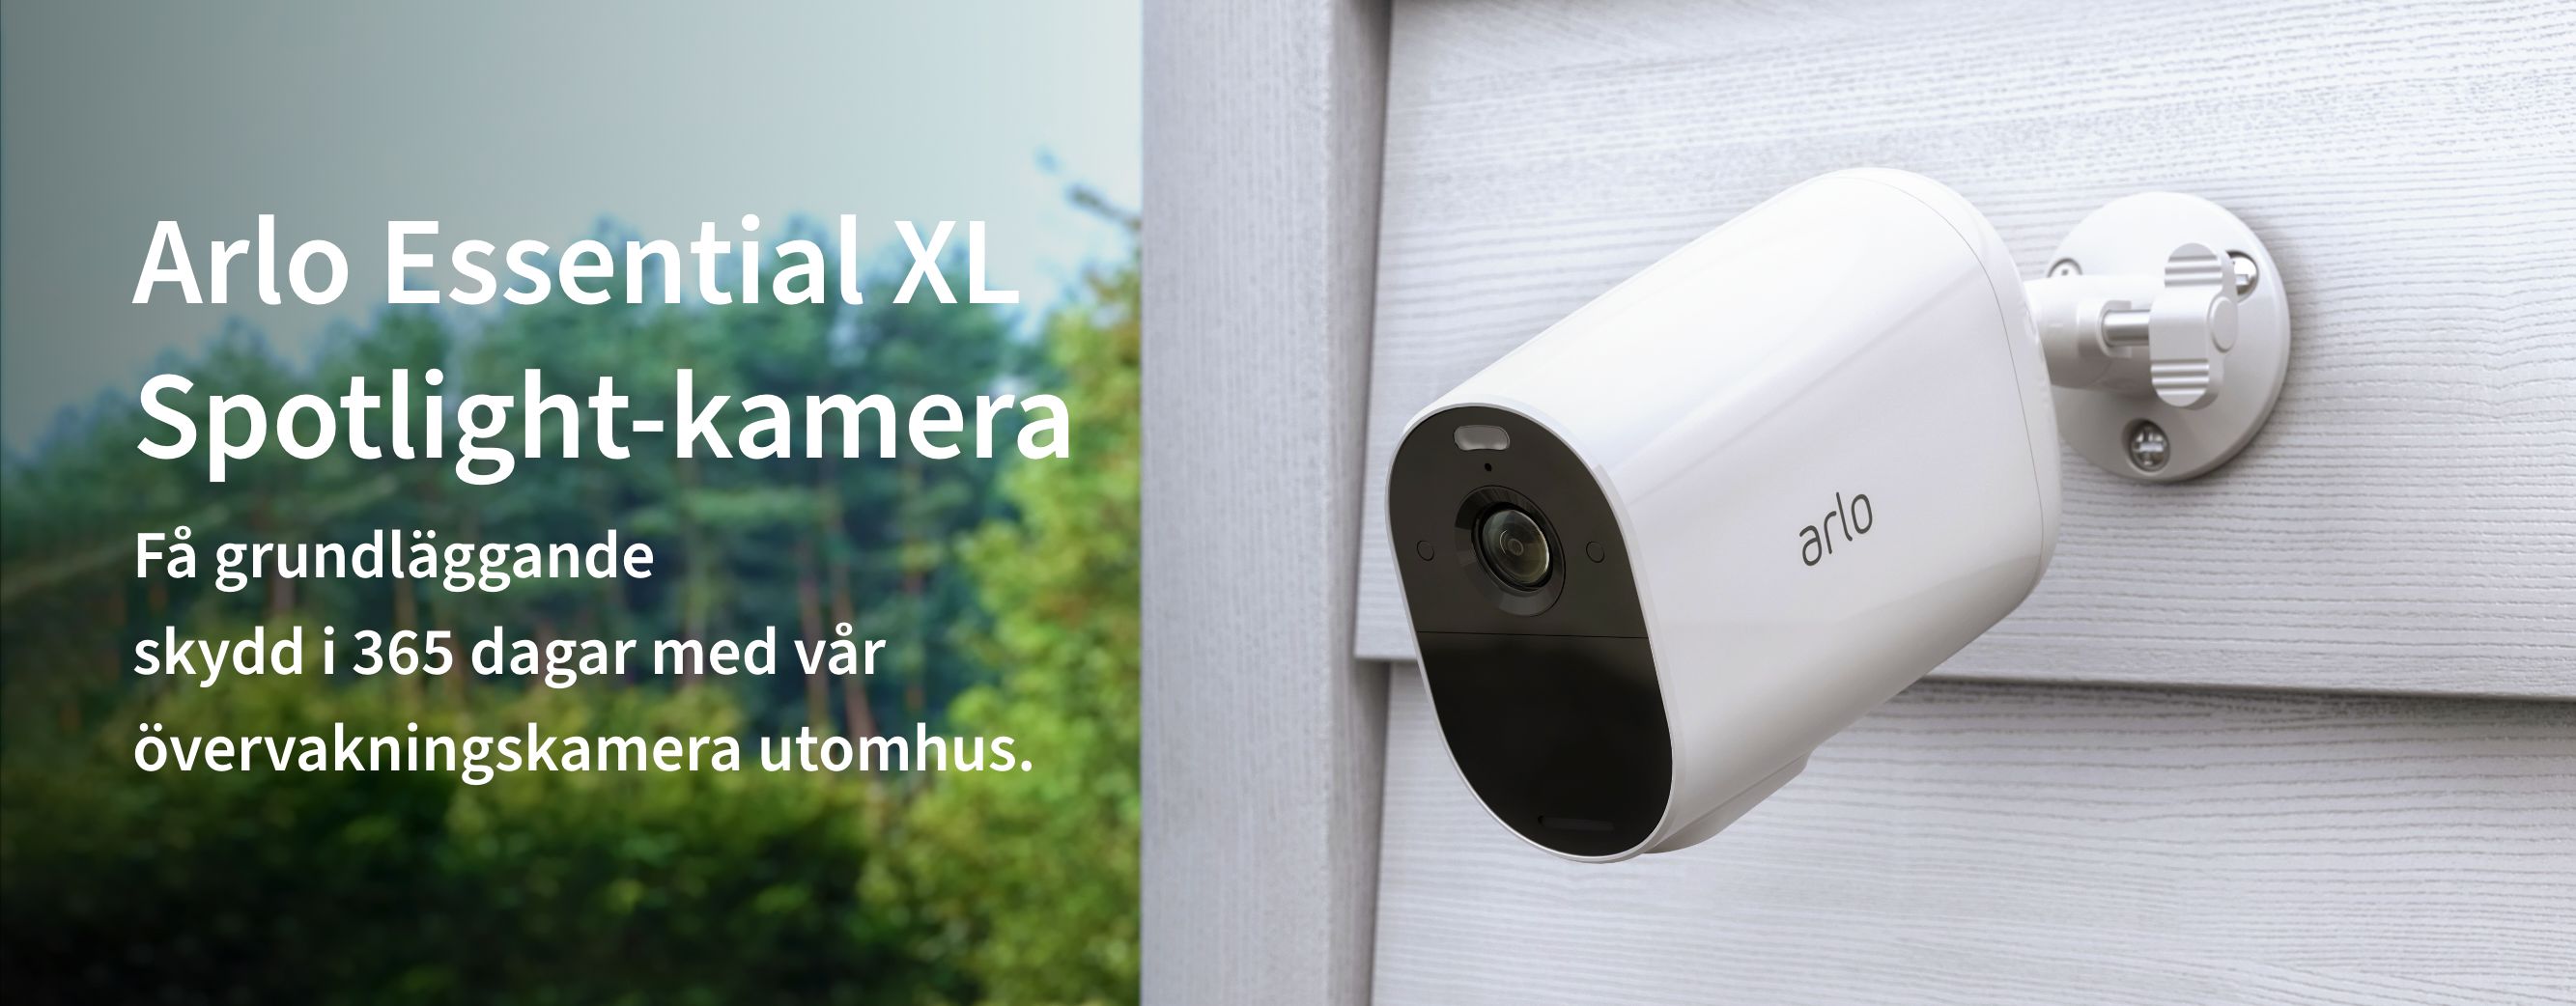 En Arlo Essential XL-säkerhetskamera utanför på ett staket ger dig enkel hemsäkerhet